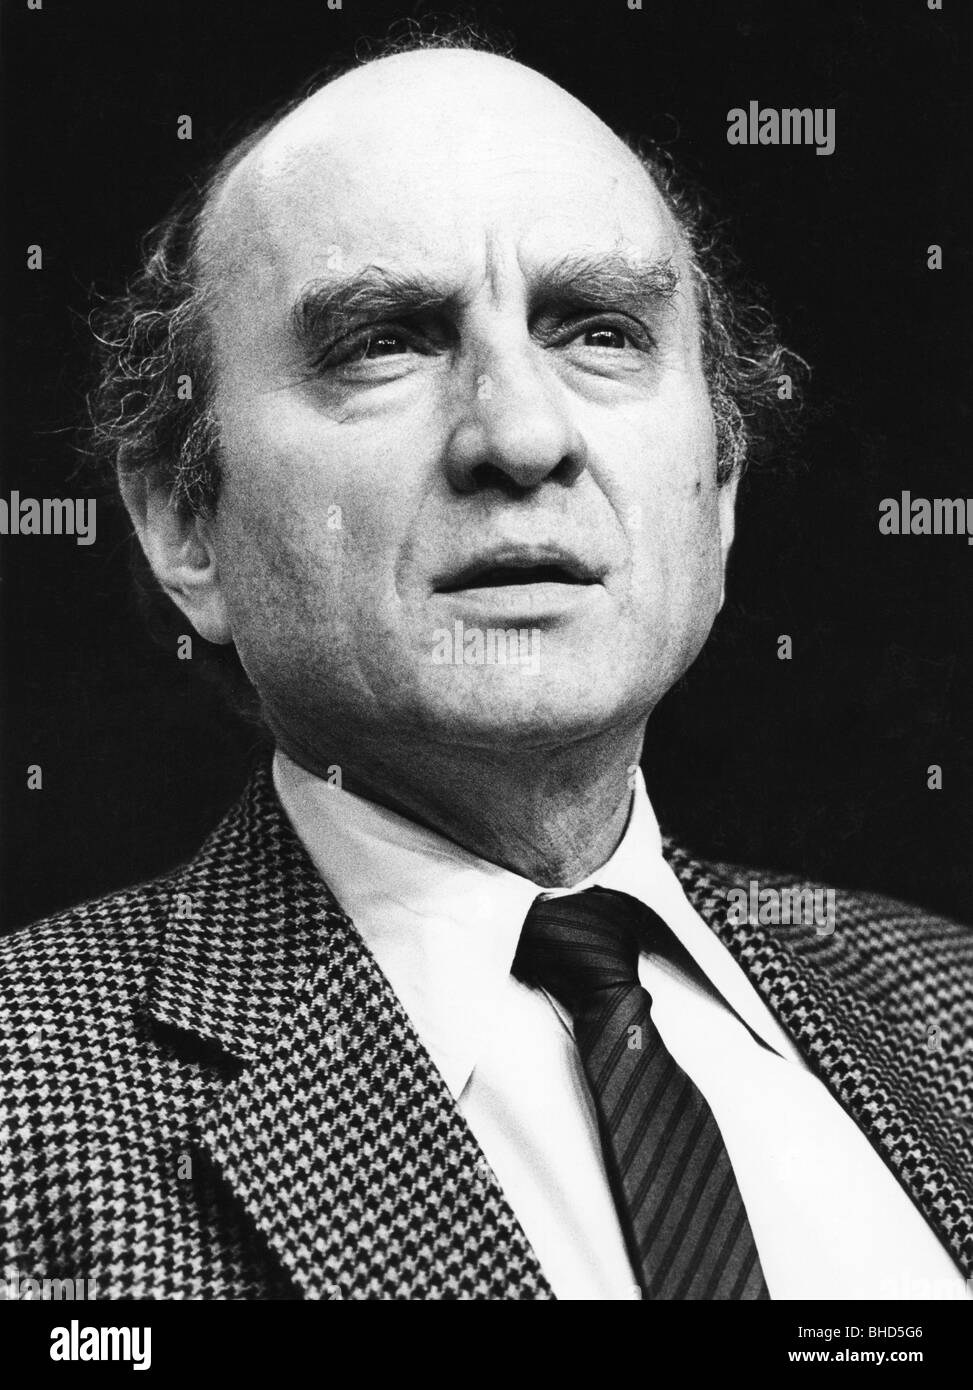 Lambsdorff, Otto Graf von, 20.12.1926 - 5.12.2009, politicien allemand (FDP), portrait, vers les années 1980, Banque D'Images